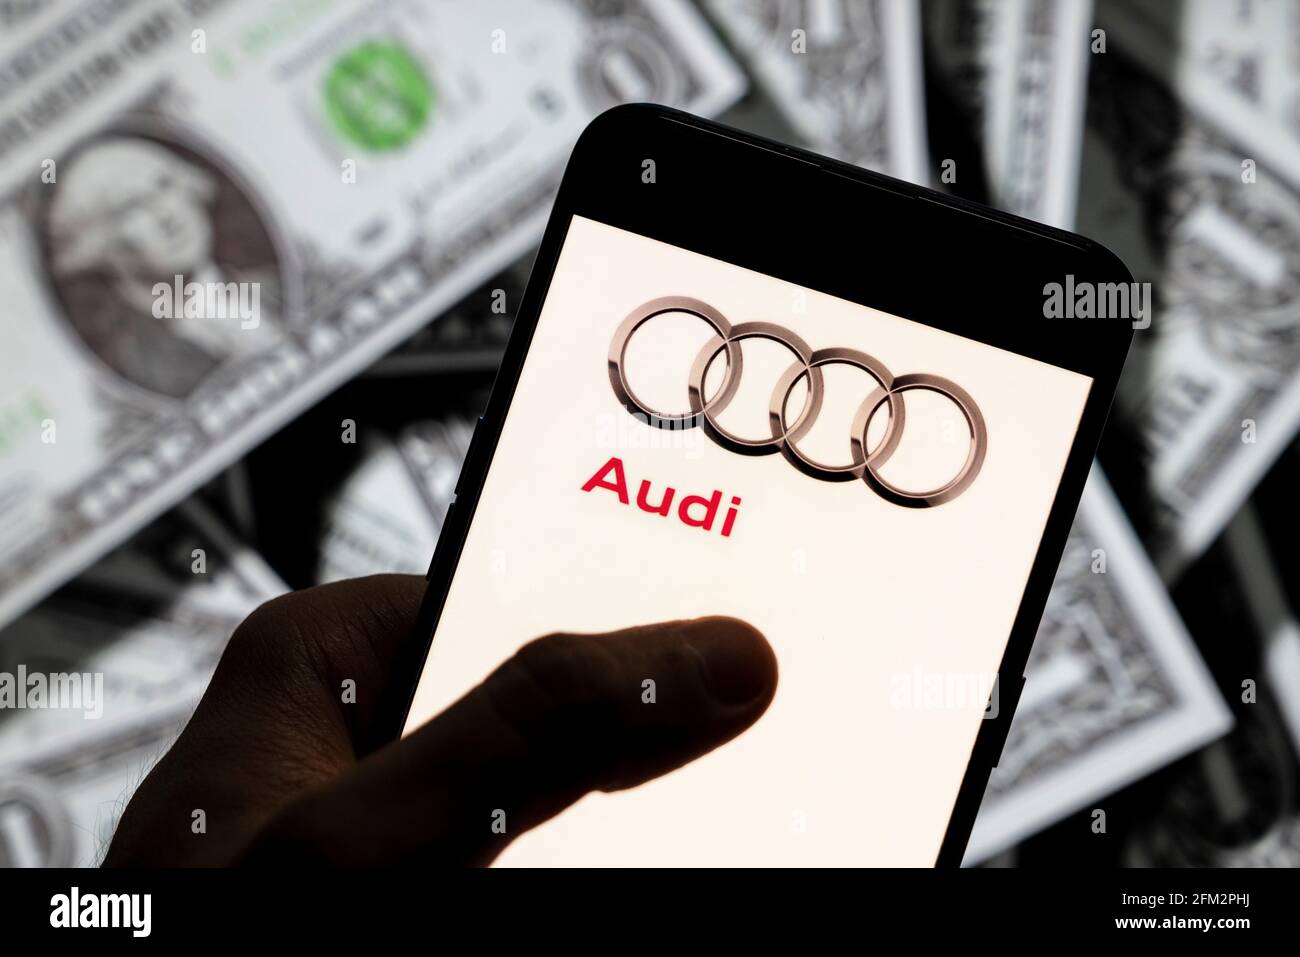 In dieser Abbildung ist das Logo des deutschen Automobilherstellers Audi zu sehen, das auf einem Smartphone mit US-Dollar-Währung im Hintergrund abgebildet ist. Stockfoto